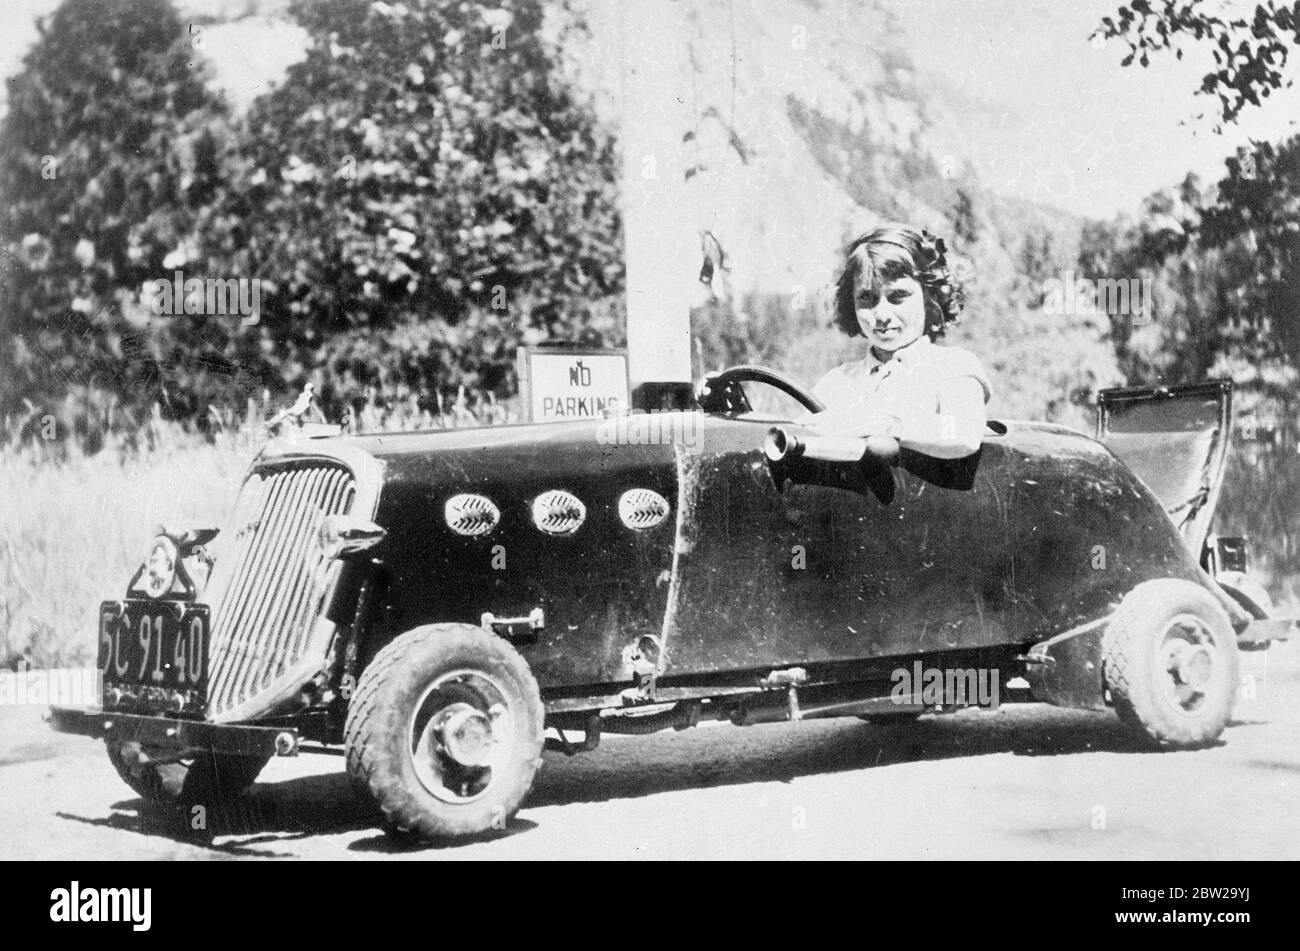 Das neunjährige kalifornische Mädchen wird zum jüngsten Autofahrer. Macht 400 Meilen Reise. Obwohl erst neun Jahre alt, ist Beverley Lancaster aus Longbeach, Kalifornien, die jüngste lizenzierte Autofahrerin in ihrem Heimatland geworden. Sie hat ein Miniaturauto, das ihr Vater gebaut hat und mit einem Segelflugmotor angetrieben wird, in dem sie 40 Meilen pro Stunde anfassen kann. Foto zeigt Beverley Lancaster in ihrem Miniatur 40 Meile pro Stunde Auto, als sie 400 Meilen zum Yosemite Nationalpark fuhr. 26. Oktober 1937 Stockfoto